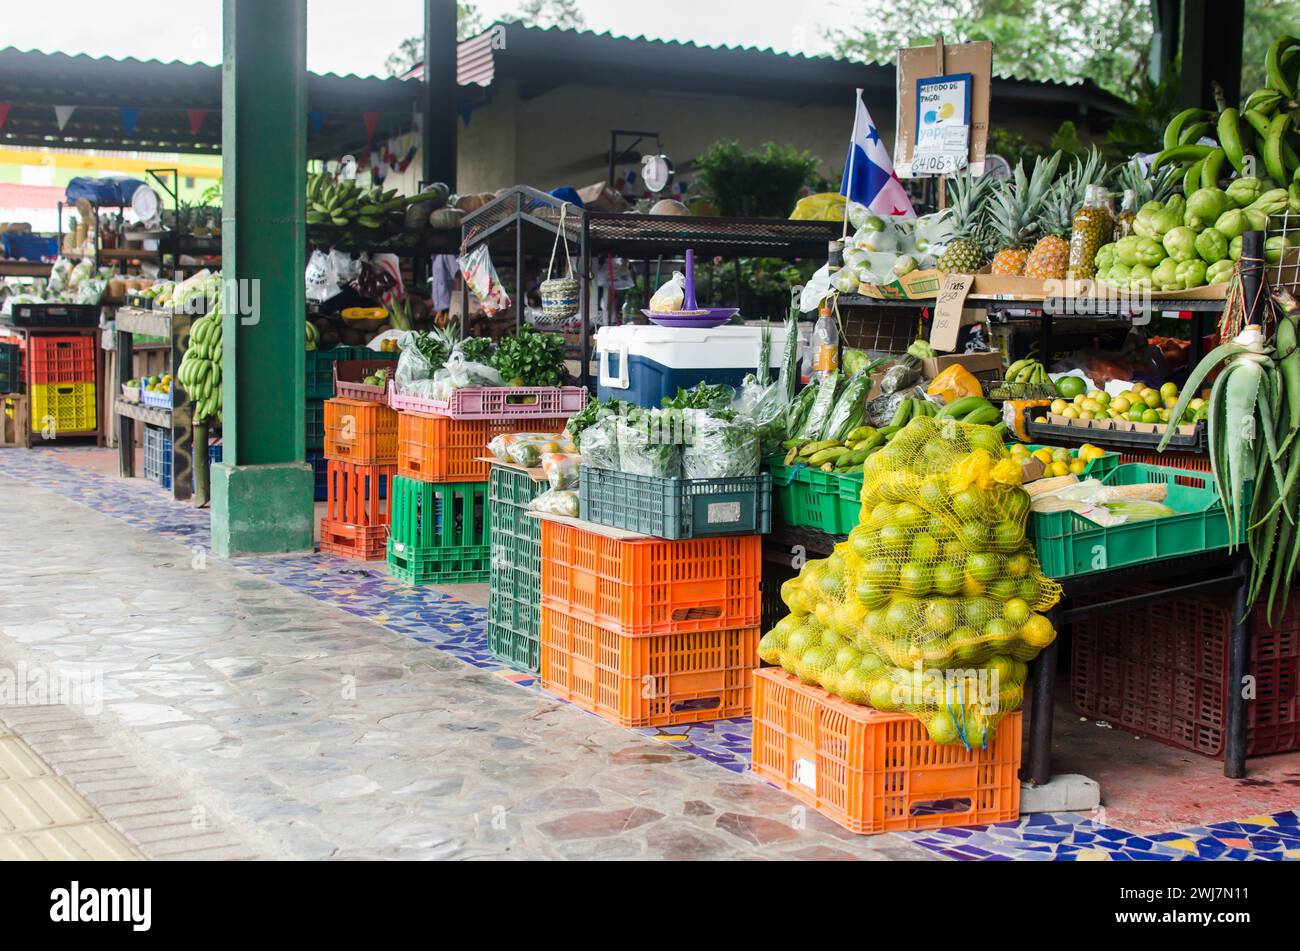 Marché municipal d'El Valle de Anton, lieu populaire proposant des produits frais, de l'artisanat local et des bonbons typiques. Banque D'Images